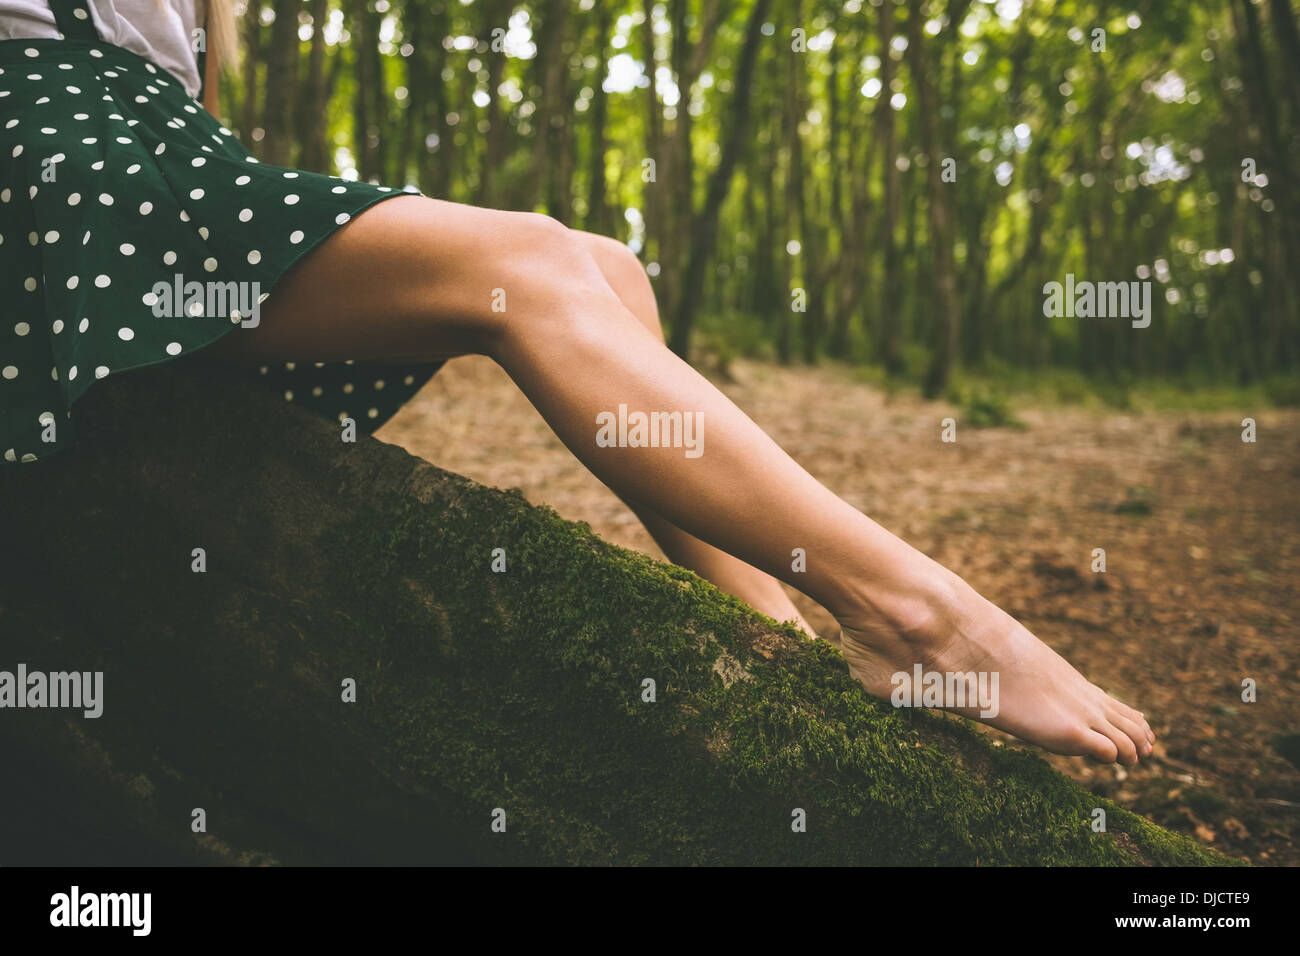 Las piernas de una mujer vistiendo una falda punteado sentado en el árbol Foto de stock